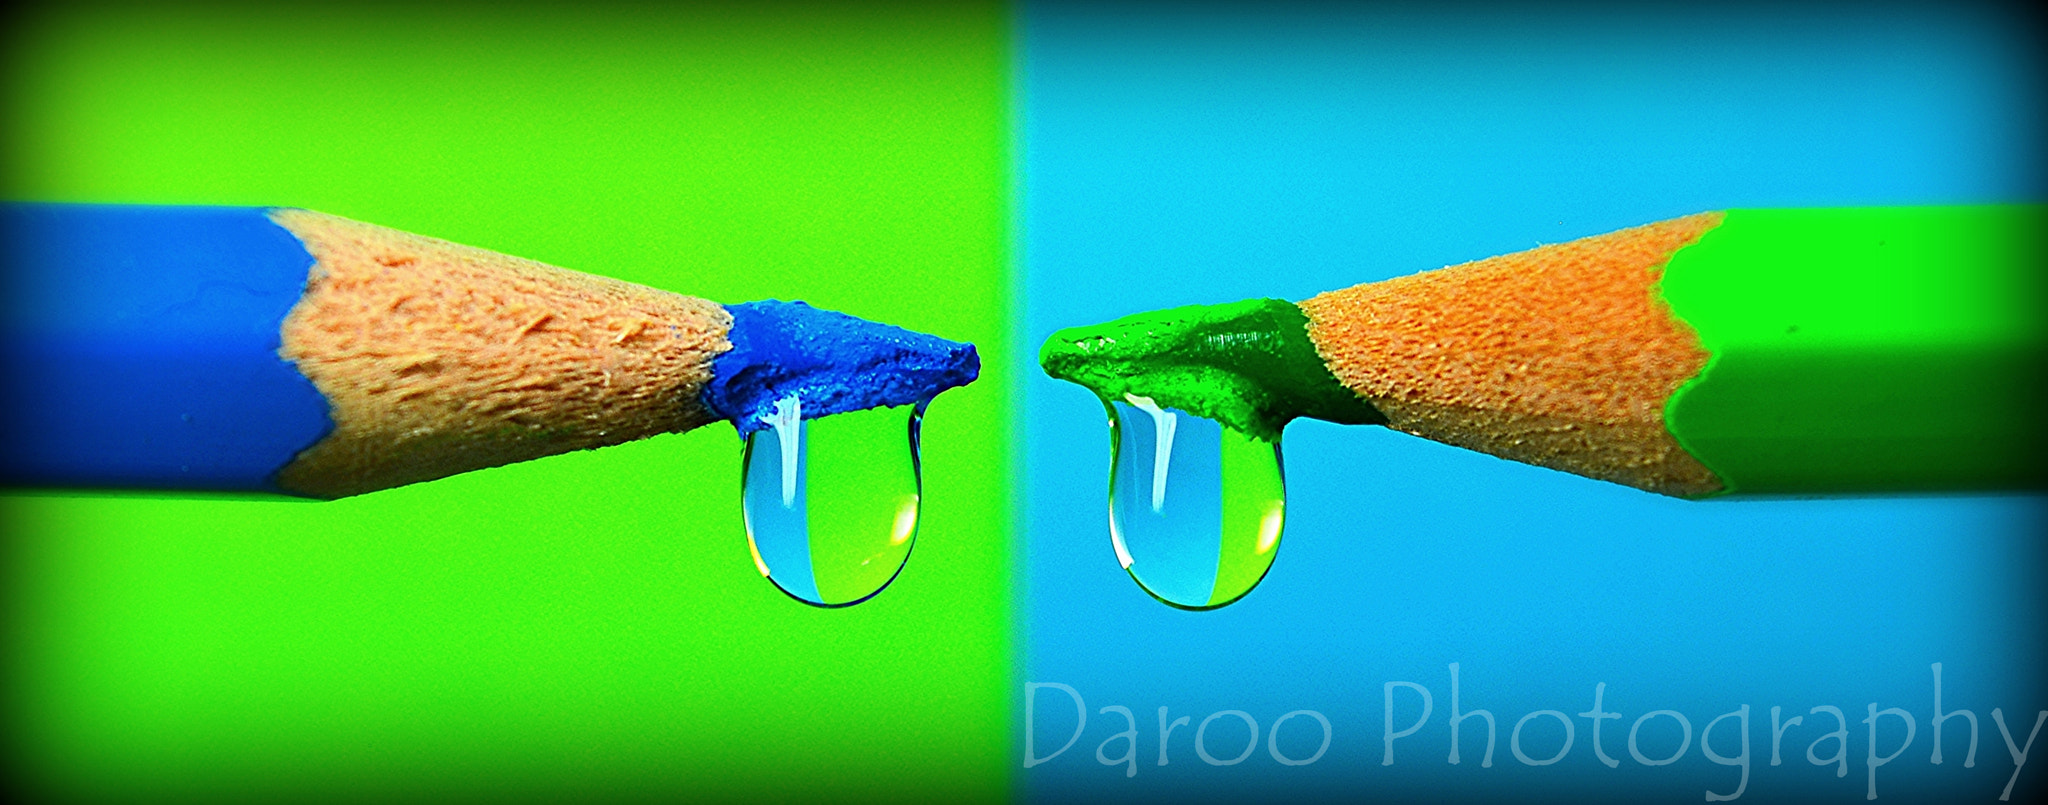 Nikon D5200 + AF Zoom-Nikkor 28-80mm f/3.5-5.6D sample photo. Verde y azul - green and blue photography